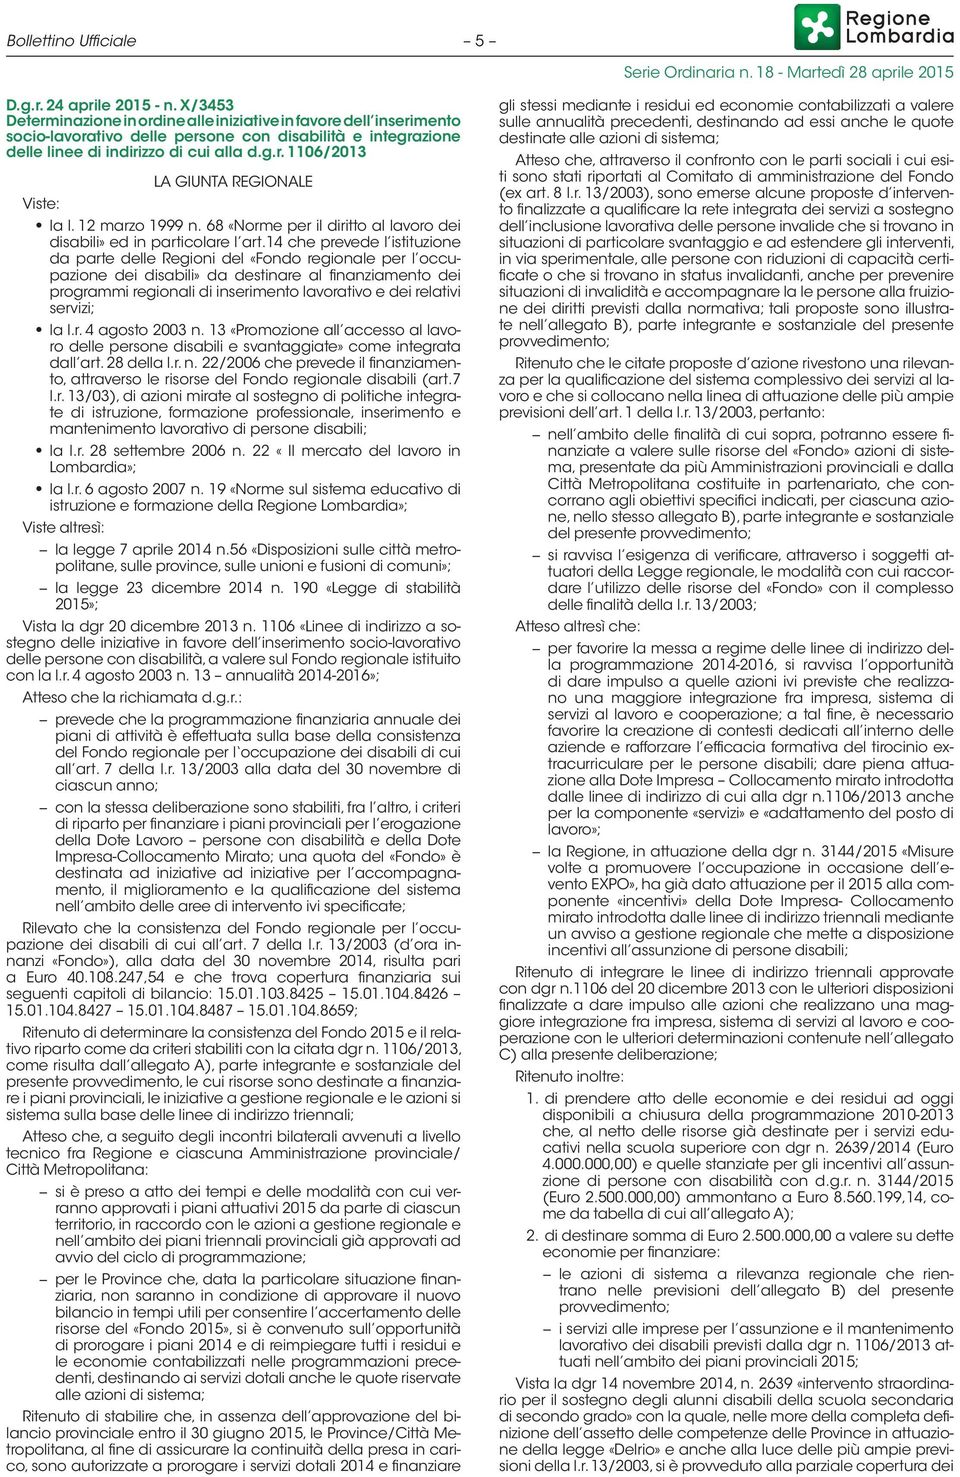 12 marzo 1999 n. 68 «Norme per il diritto al lavoro dei disabili» ed in particolare l art.